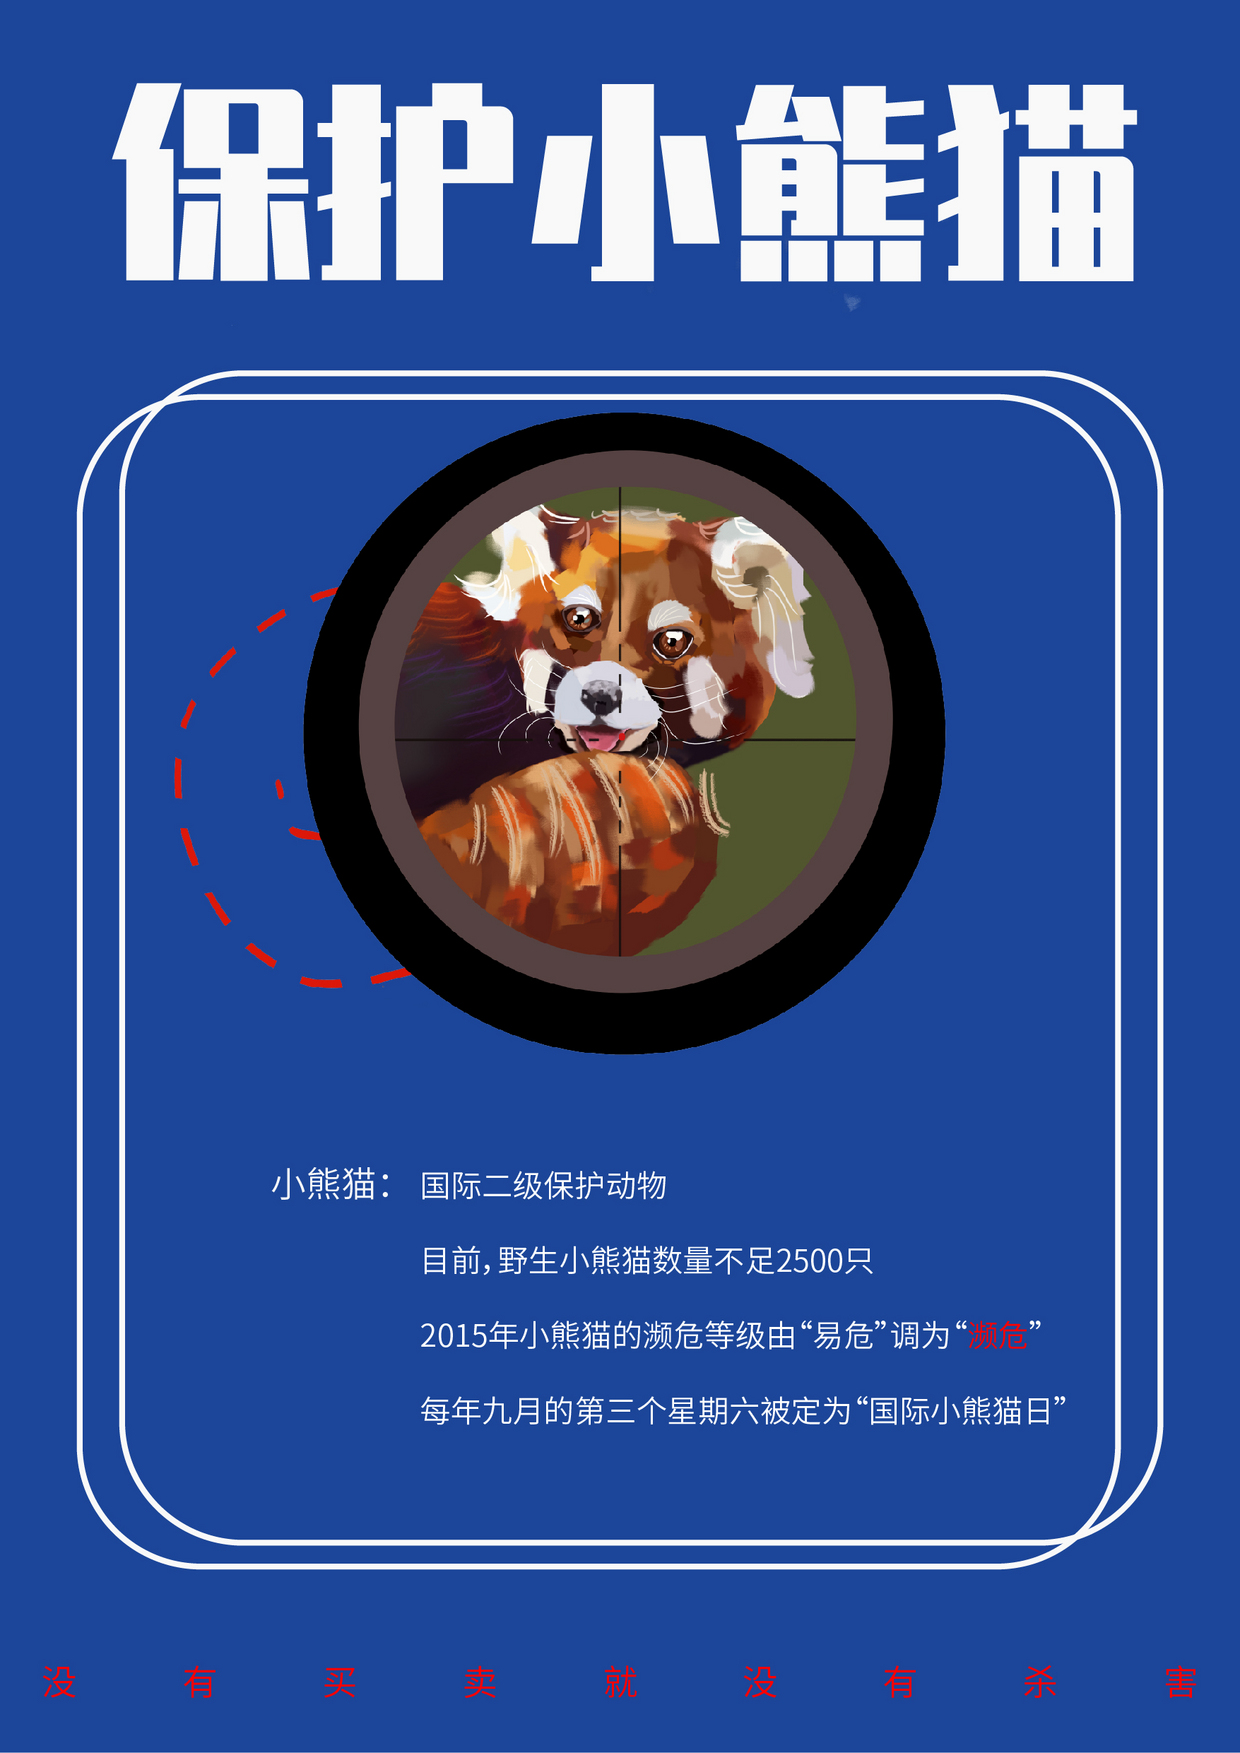 保护熊猫创意海报名字图片